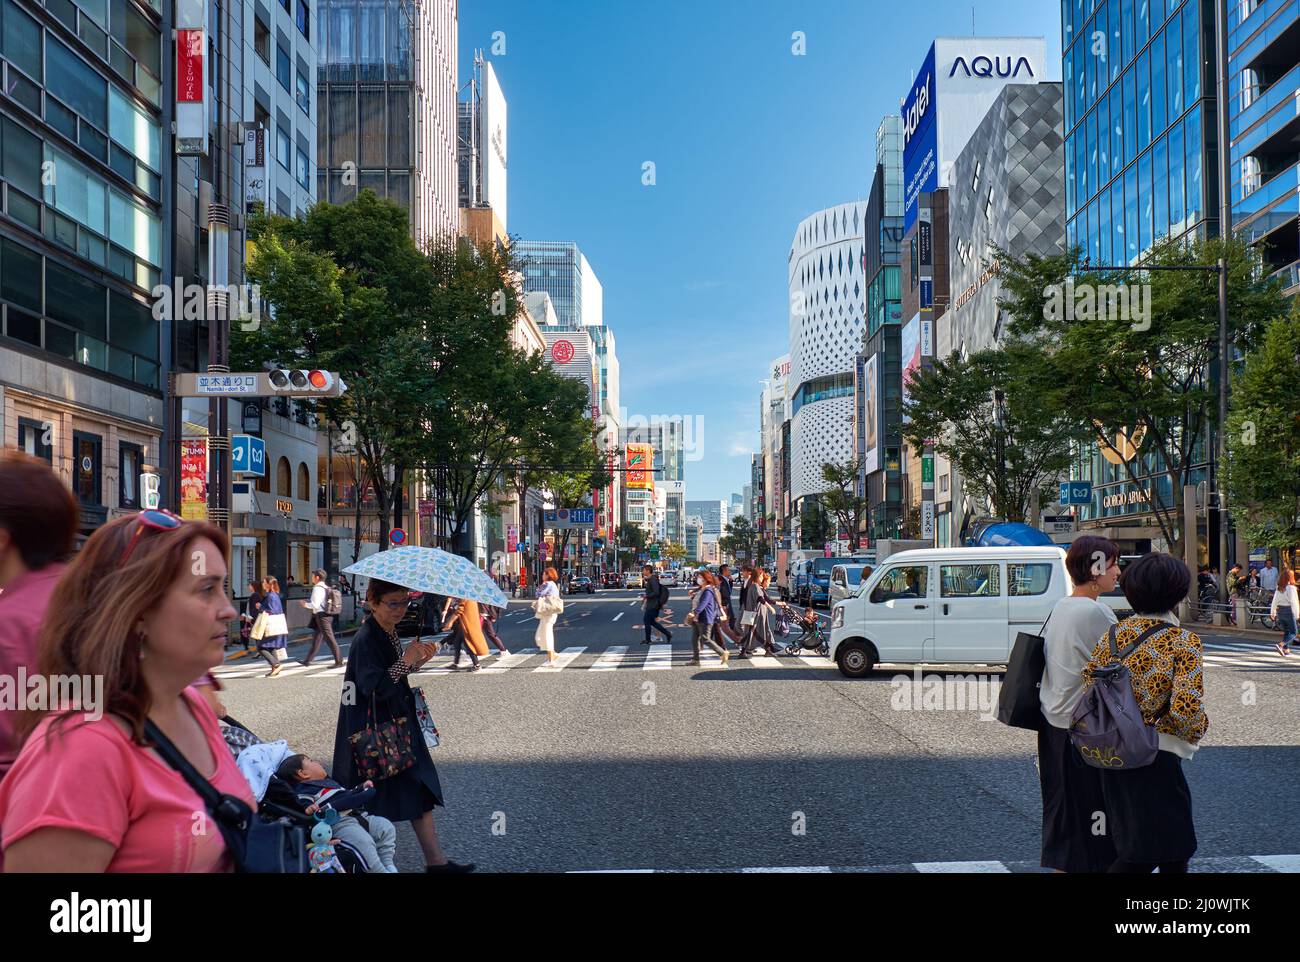 Harumi-dori avenue, the thoroughfare in the central Tokyo. Japan Stock Photo